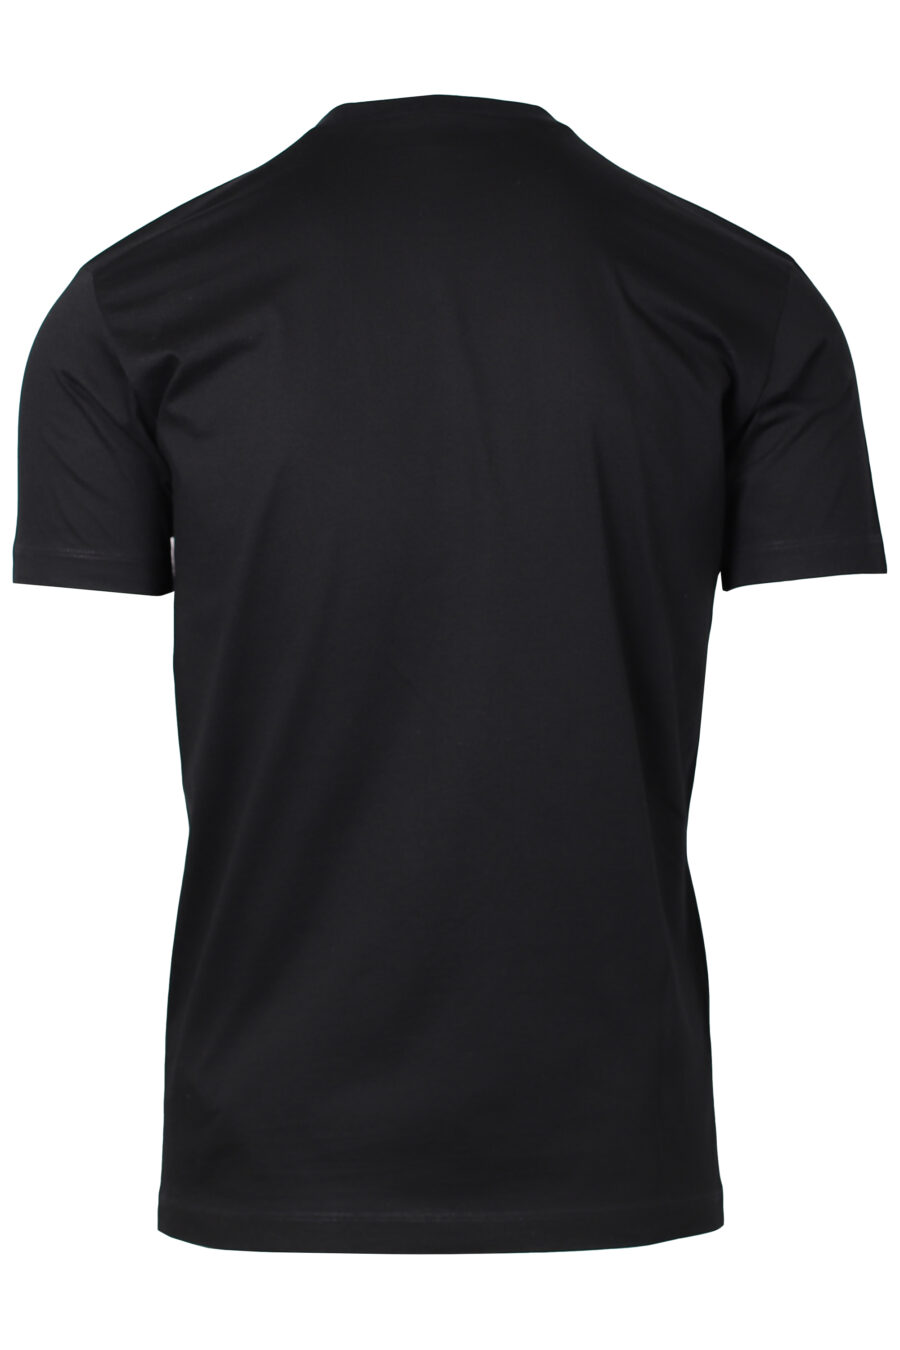 Camiseta negra con maxilogo vertical blanco - IMG 2216